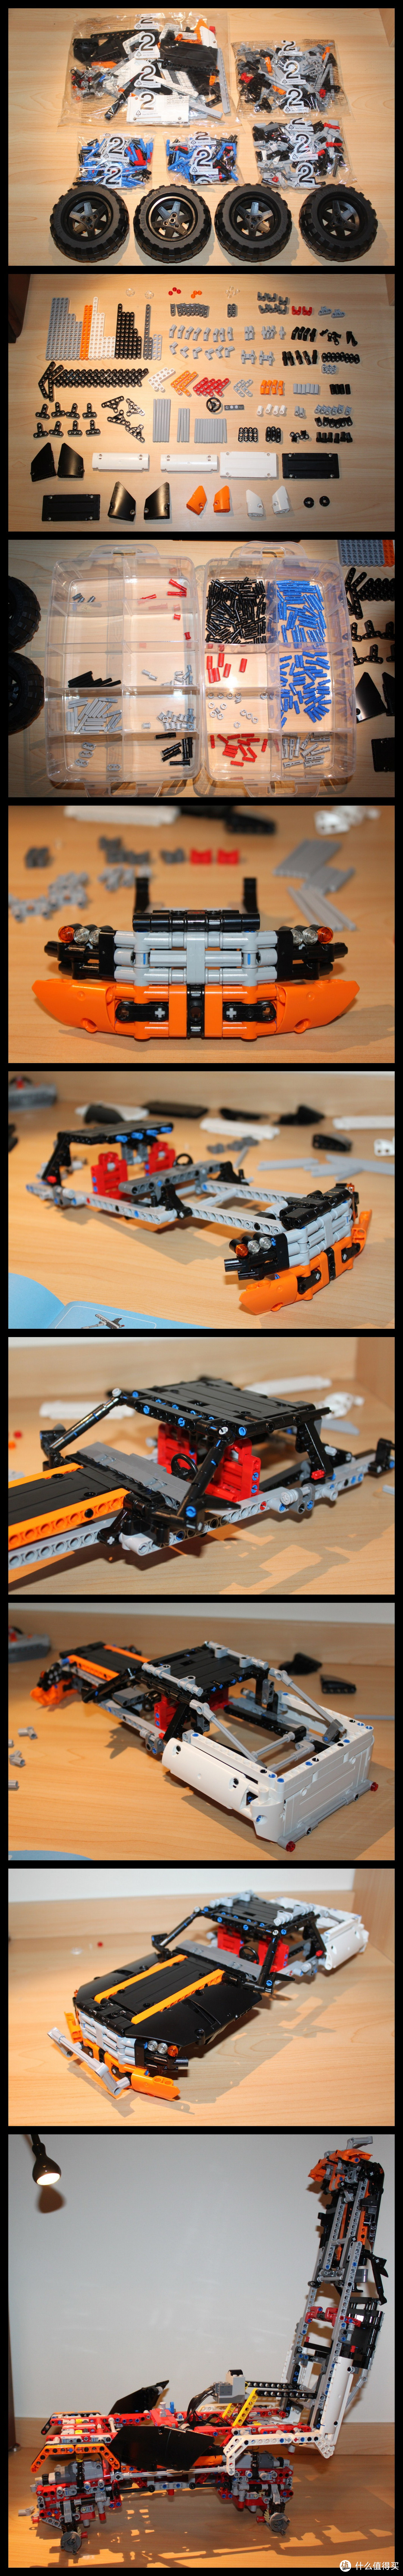 也来晒晒我的LEGO12年科技旗舰—— LEGO 乐高 机械组 Technic 9398 四驱越野遥控车